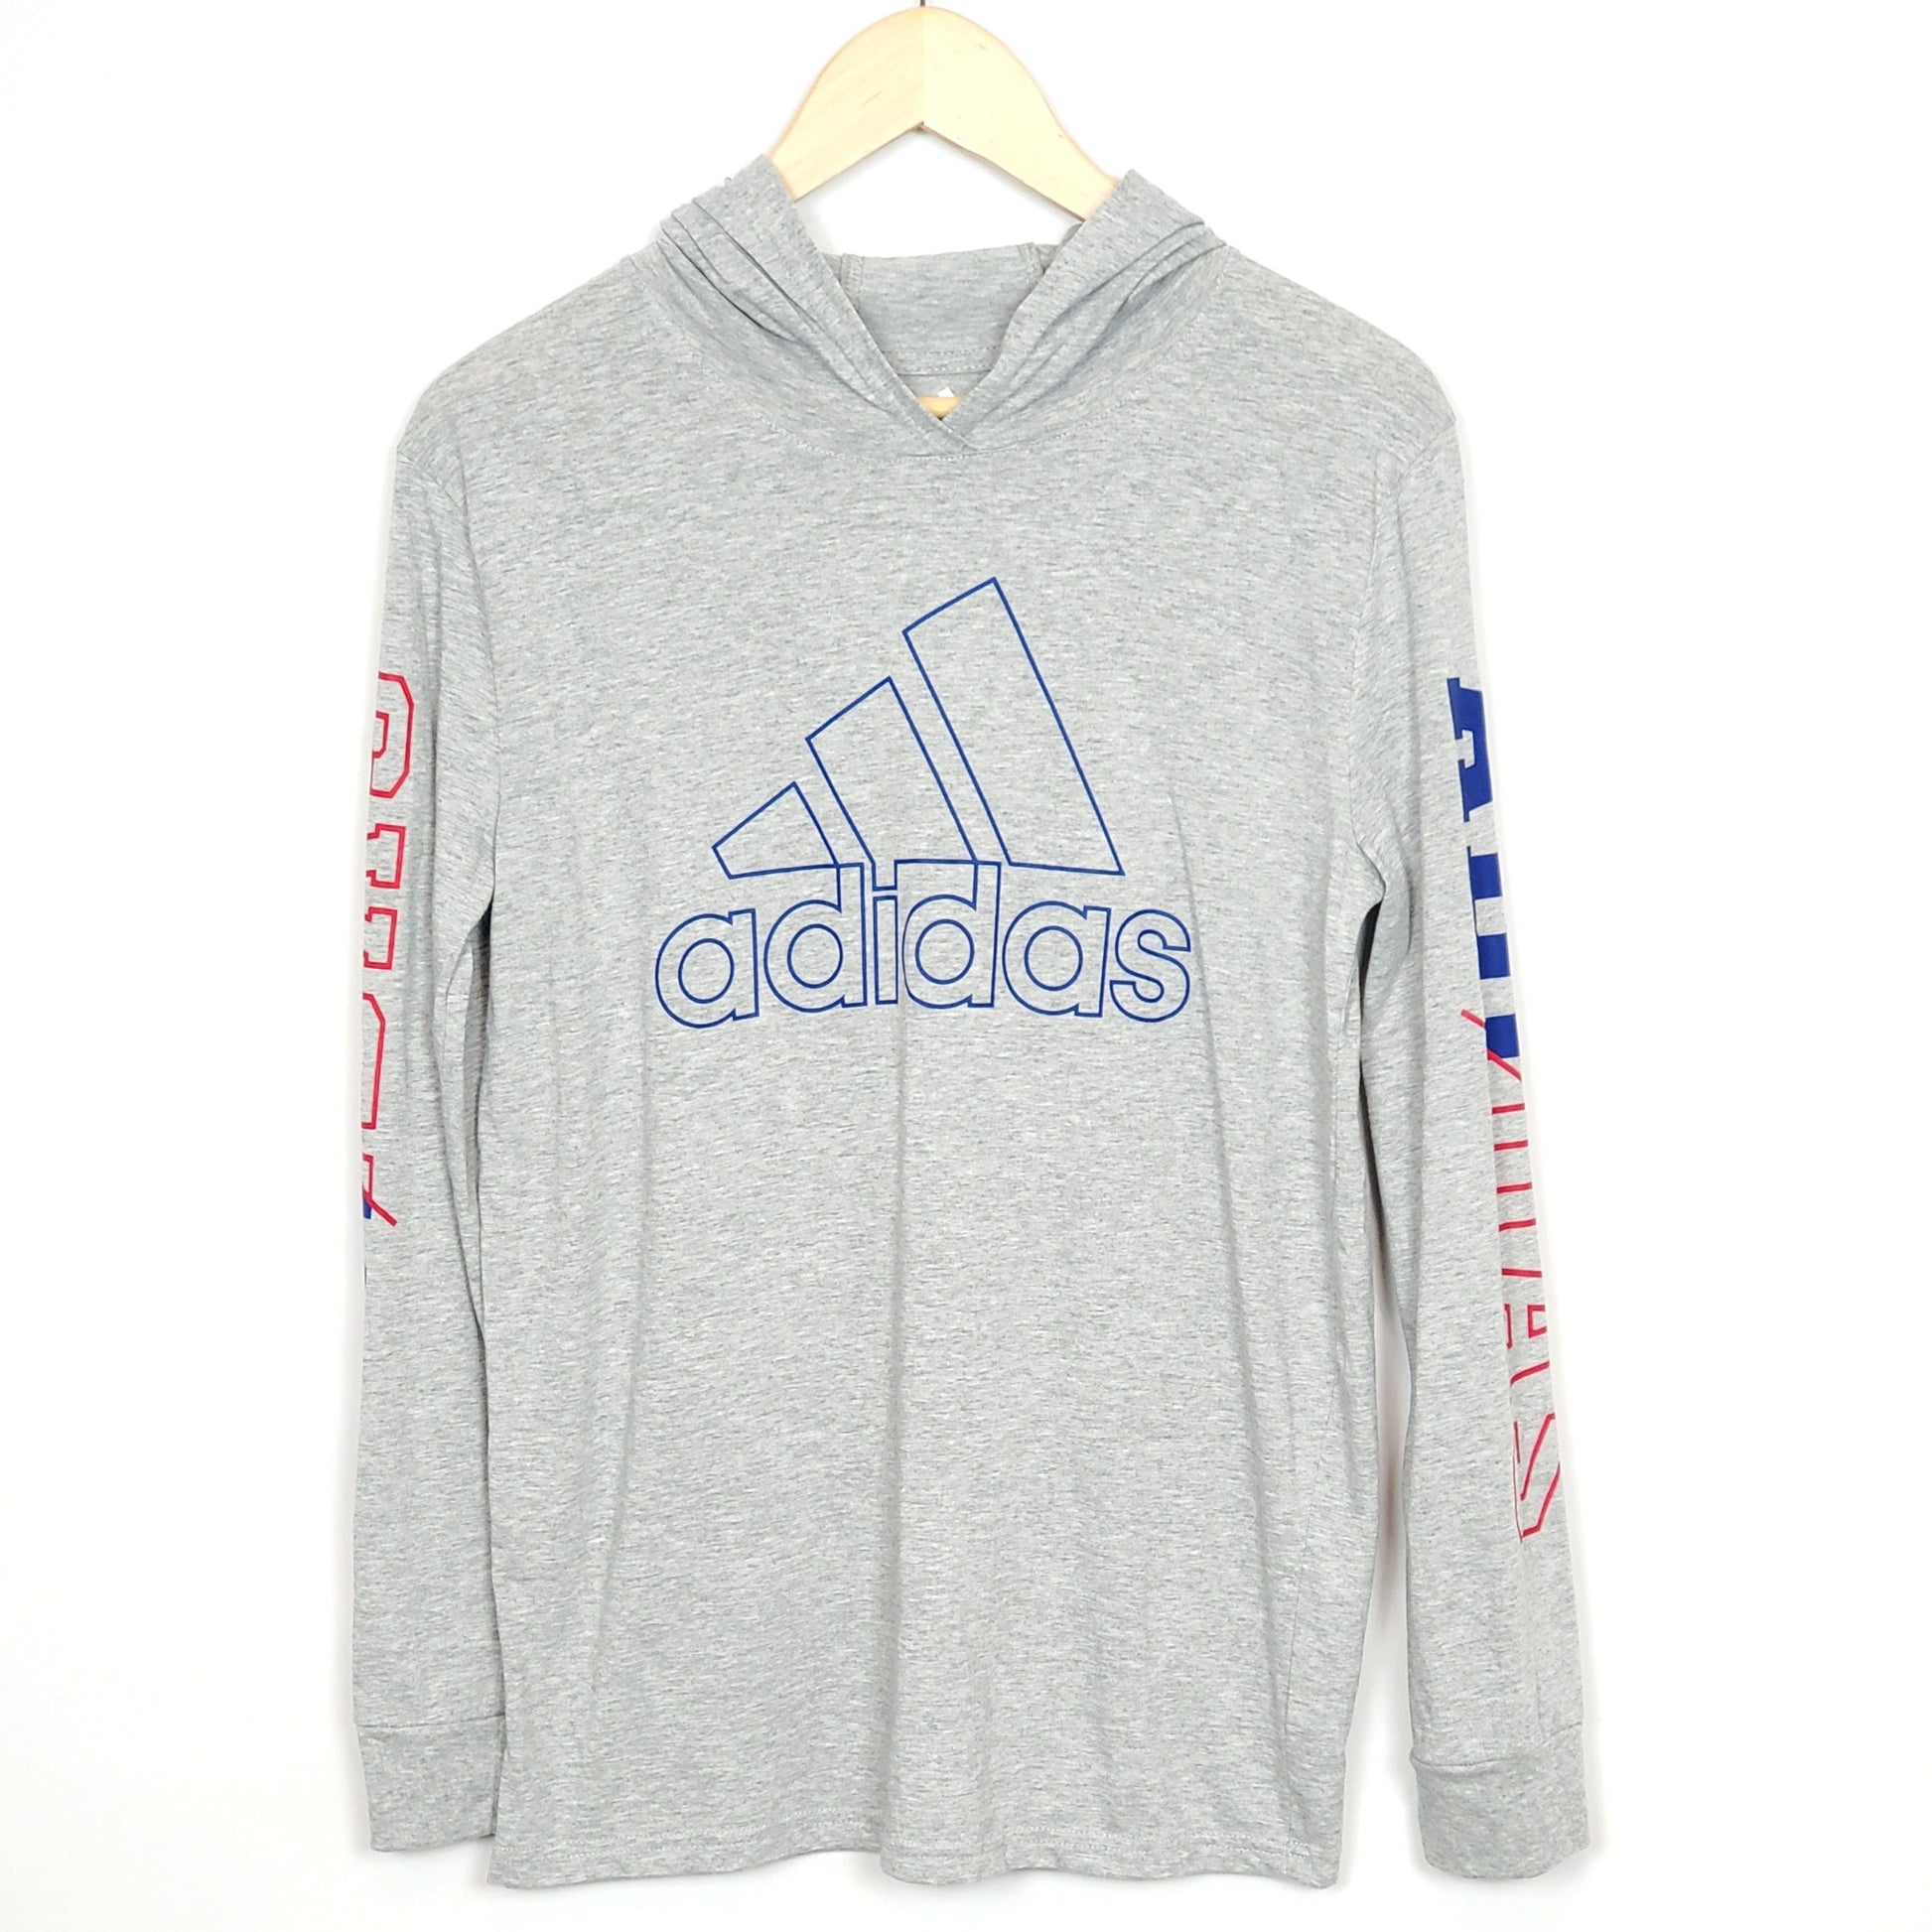 Adidas Boys Grey Logo Hooded Shirt Size 14 Used, front